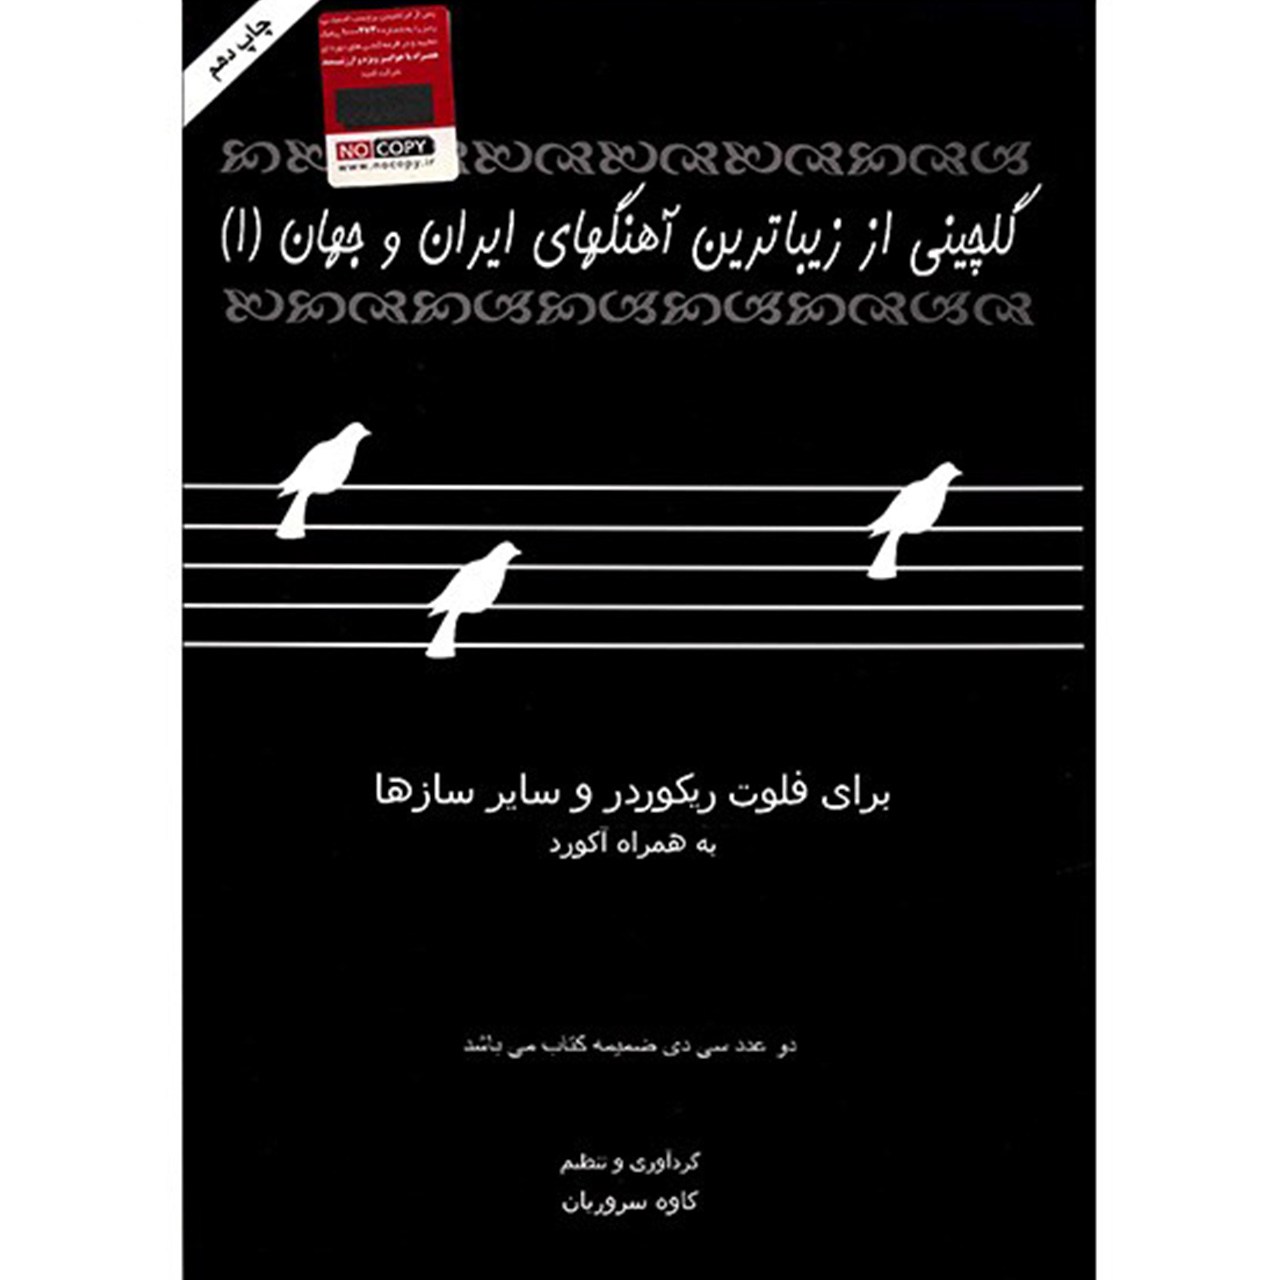 کتاب گلچینی از آهنگهای ایران و جهان اثر کاوه سروریان